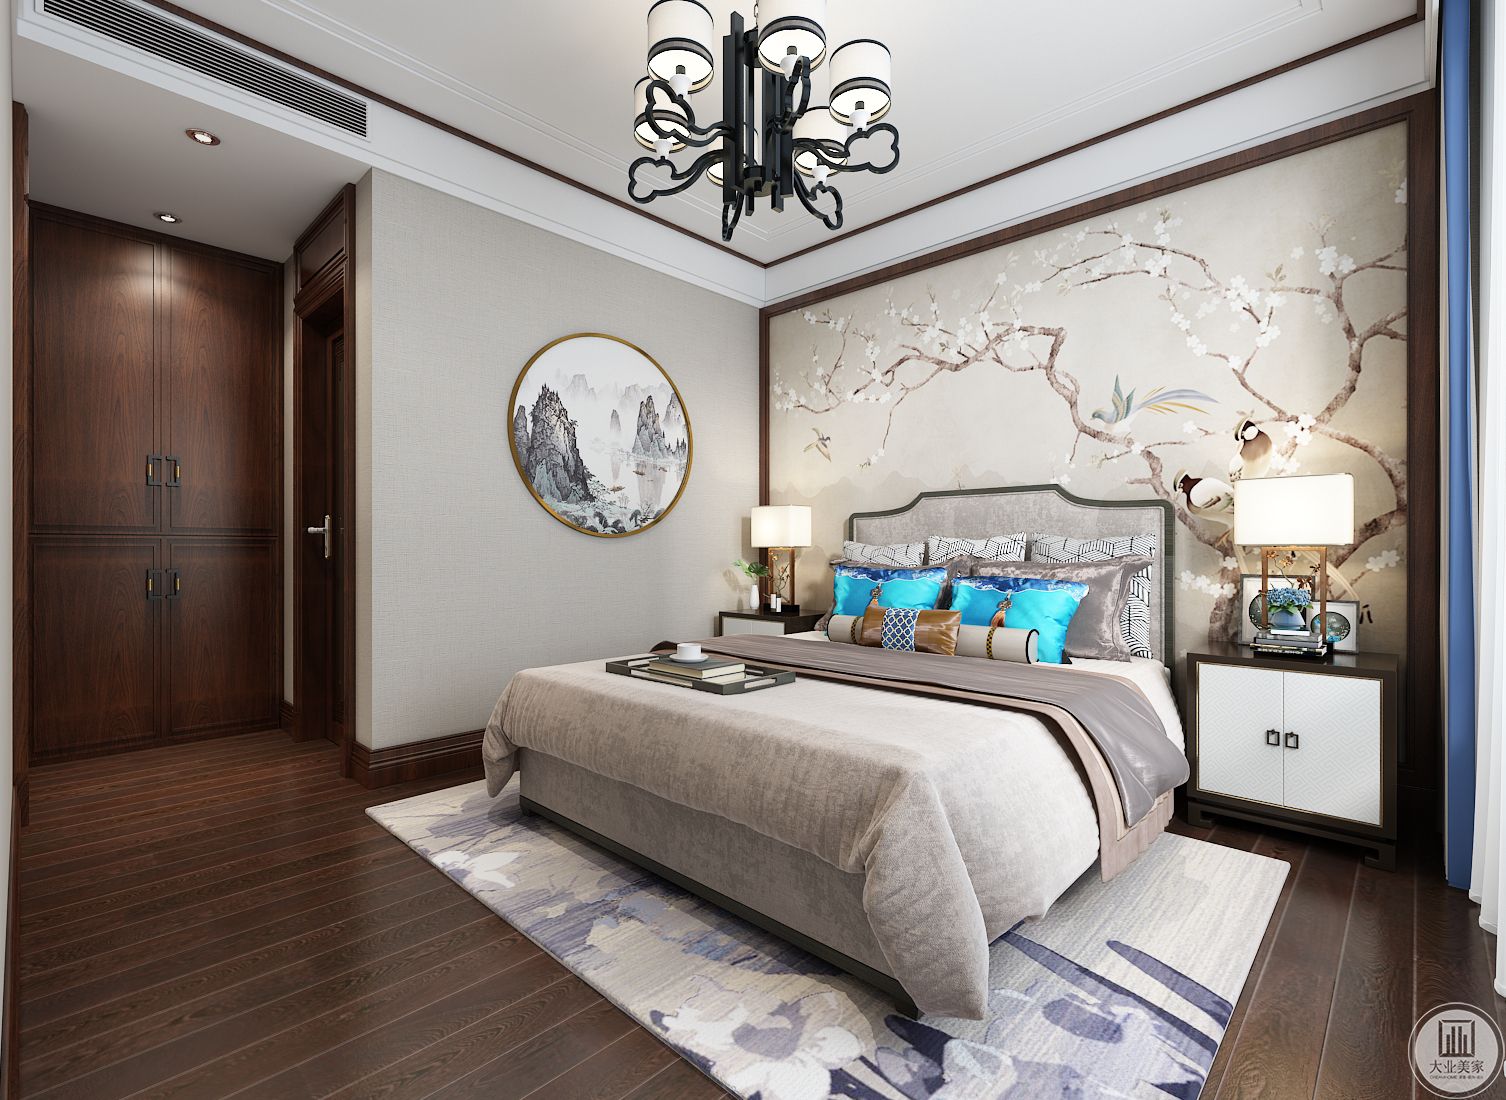 次卧室床头背景墙以花鸟为主，床头柜具有典型中式风格。